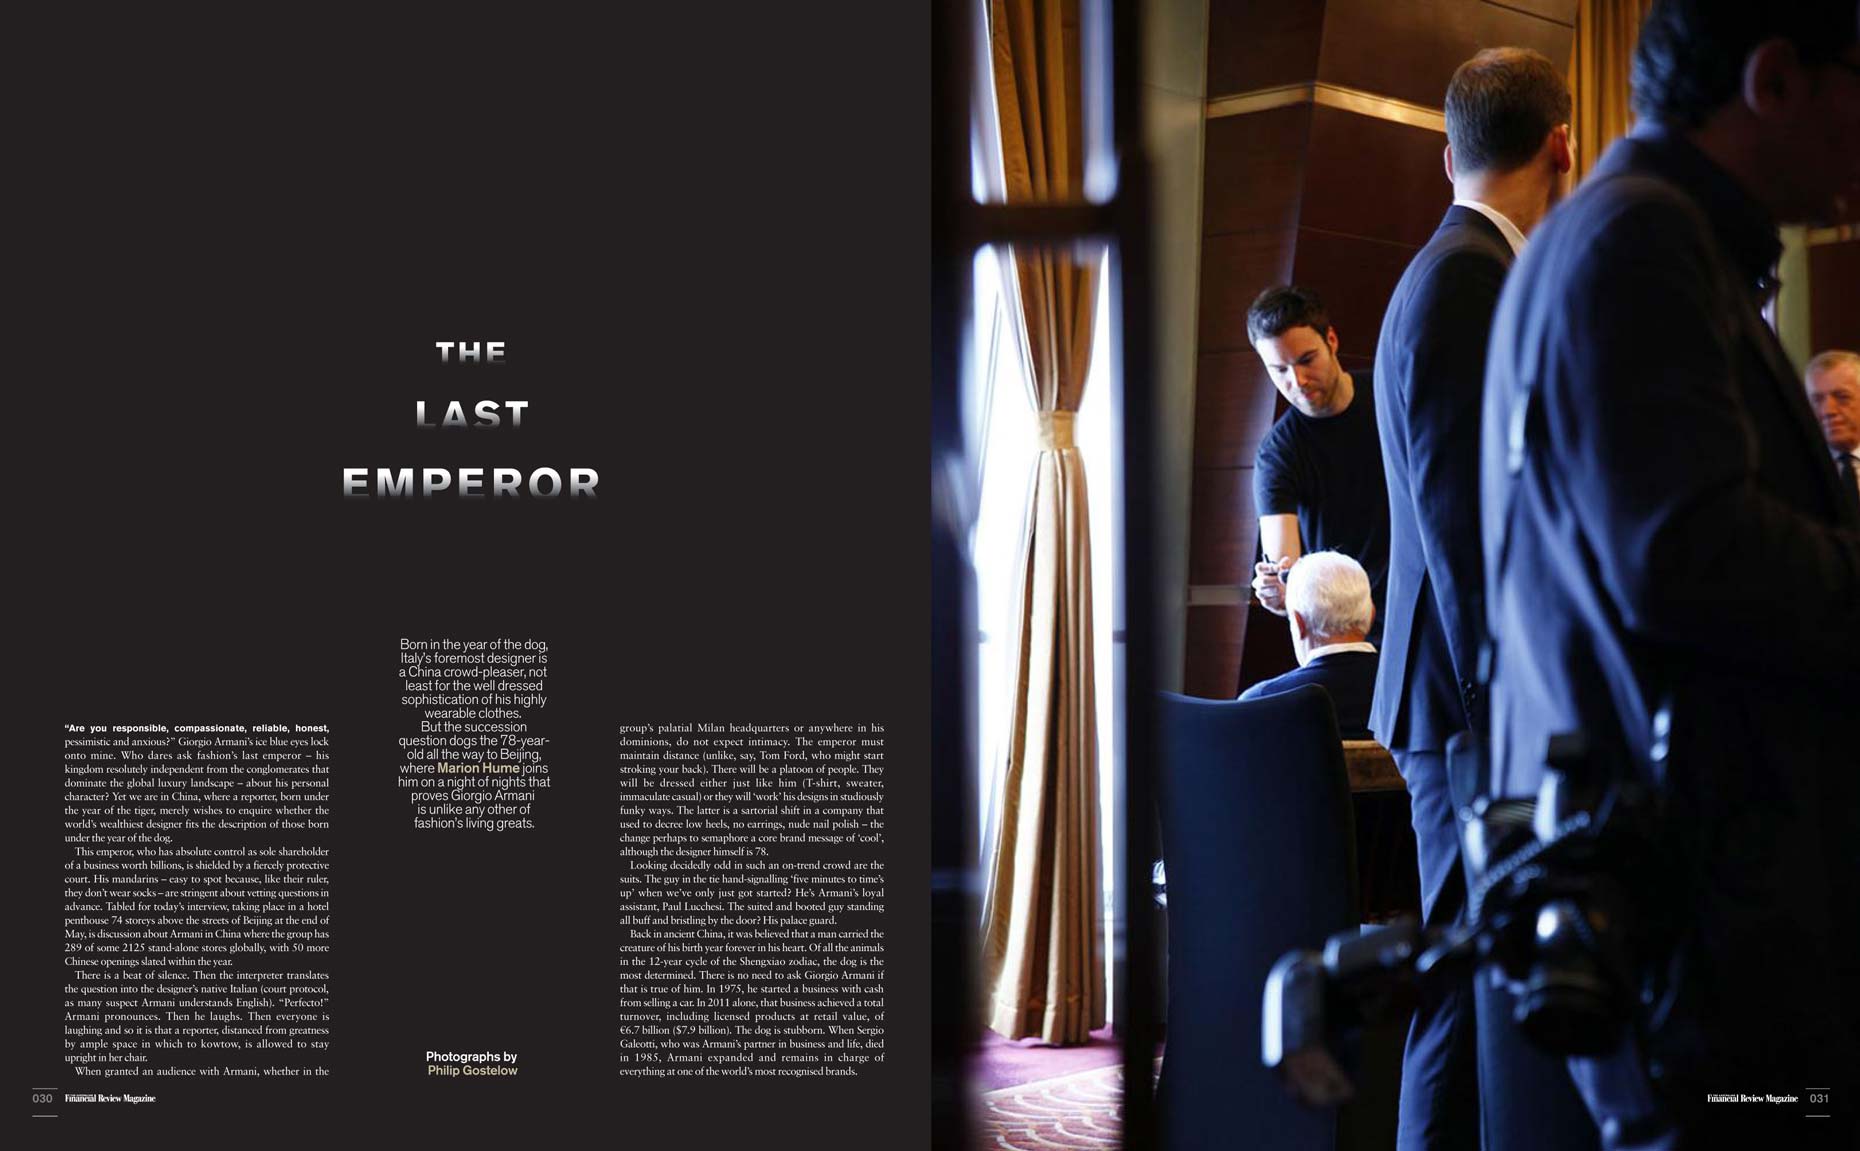 The Australian Financial Review Magazine - Giorgio Armani cover feature spread - August 2012